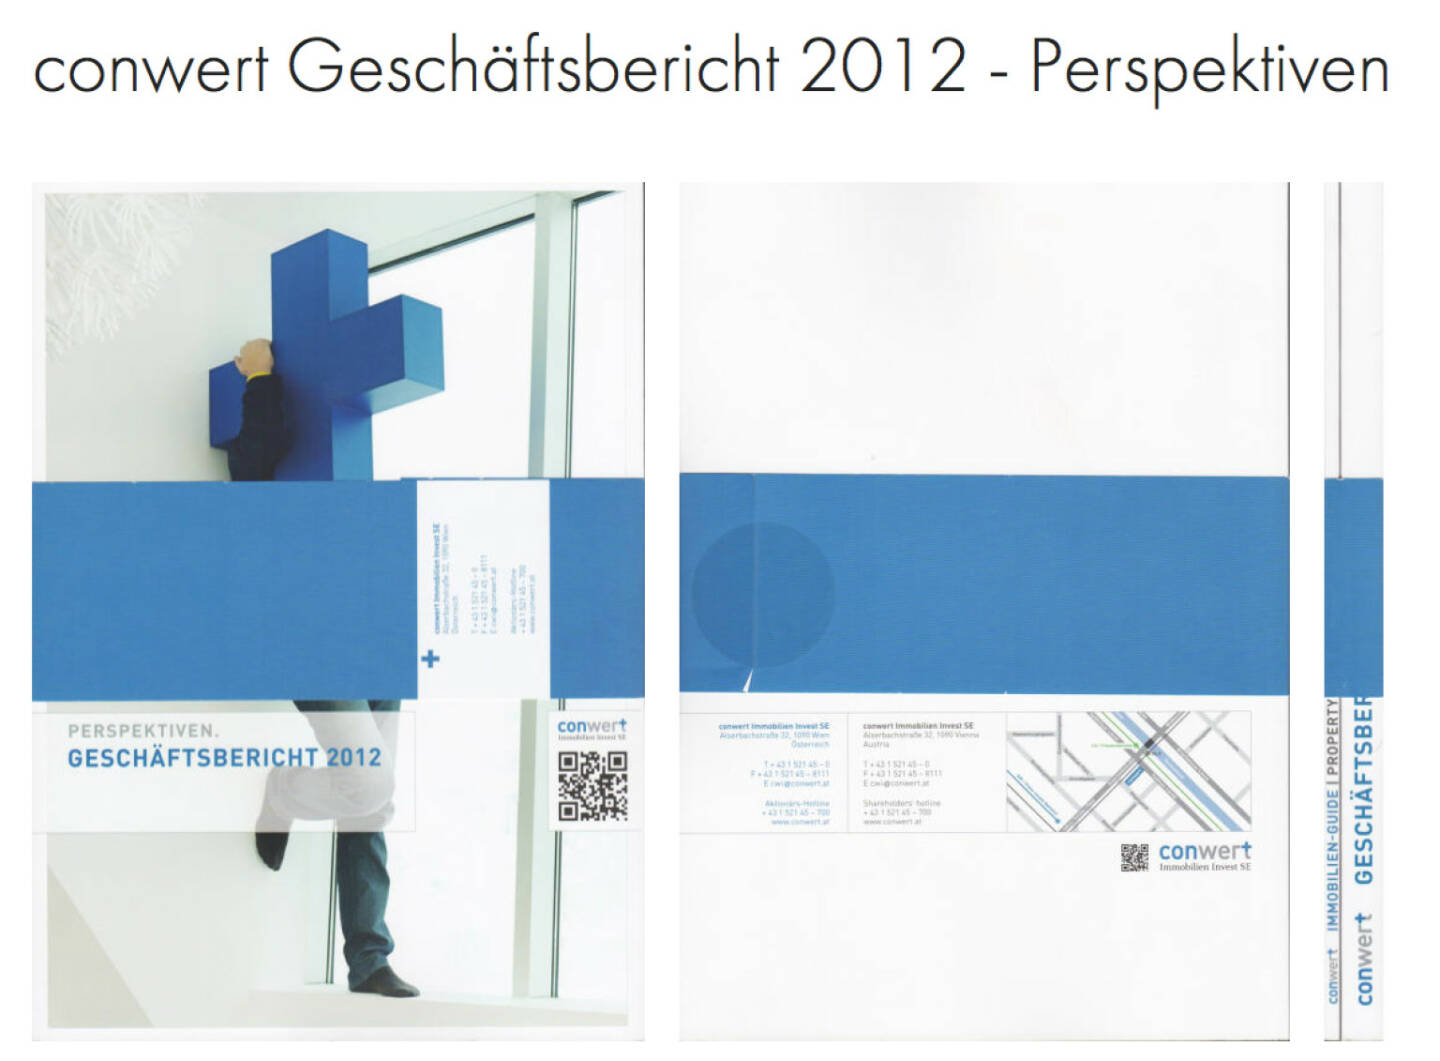 conwert Geschäftsbericht http://josefchladek.com/companyreport/conwert_geschaftsbericht_2012_-_perspektiven